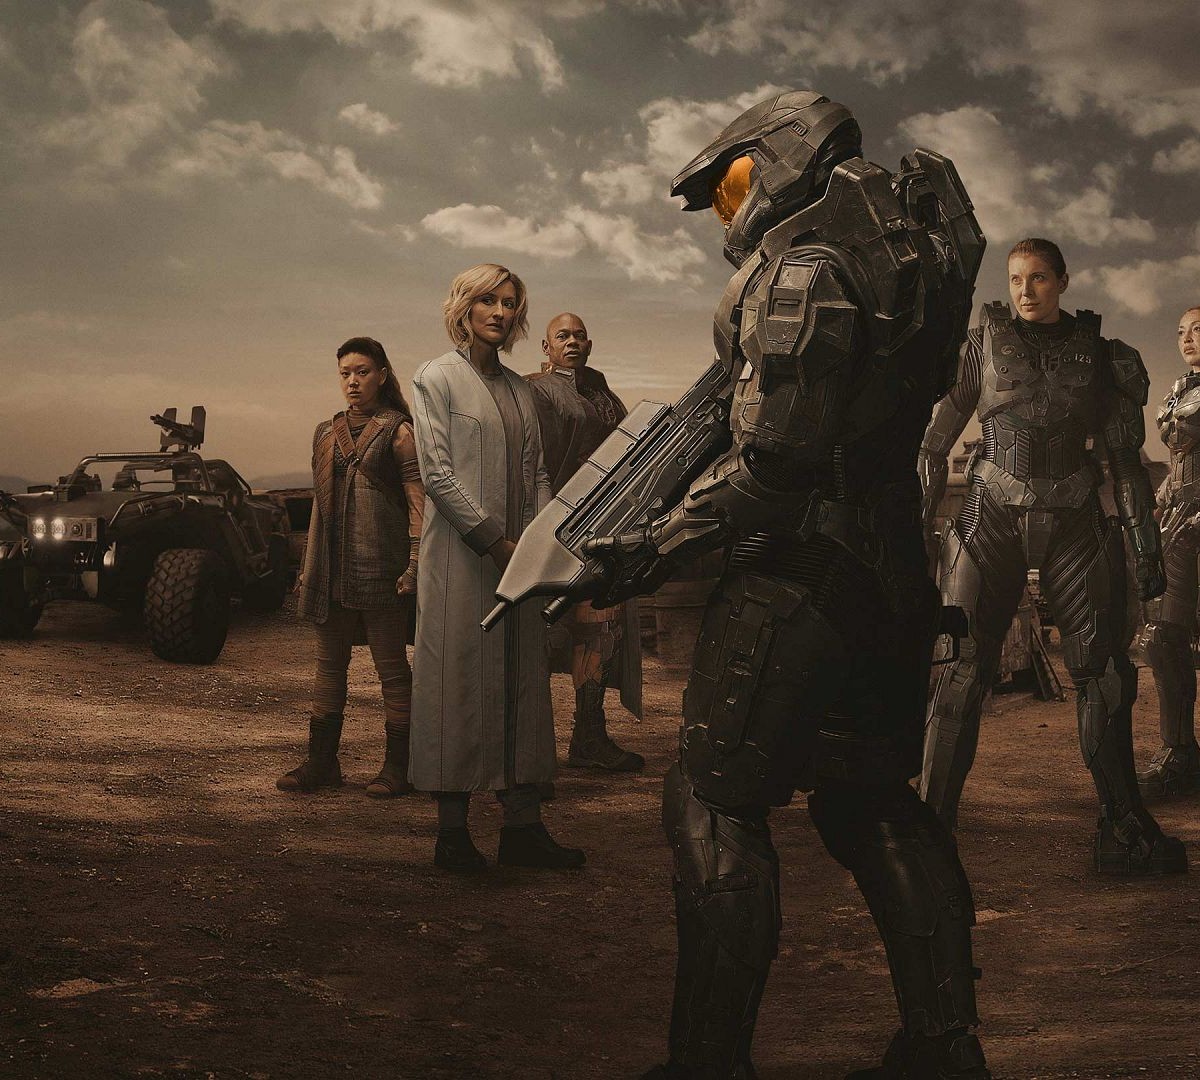 Halo: Paramount Plus confirma planos para além da segunda temporada da série  